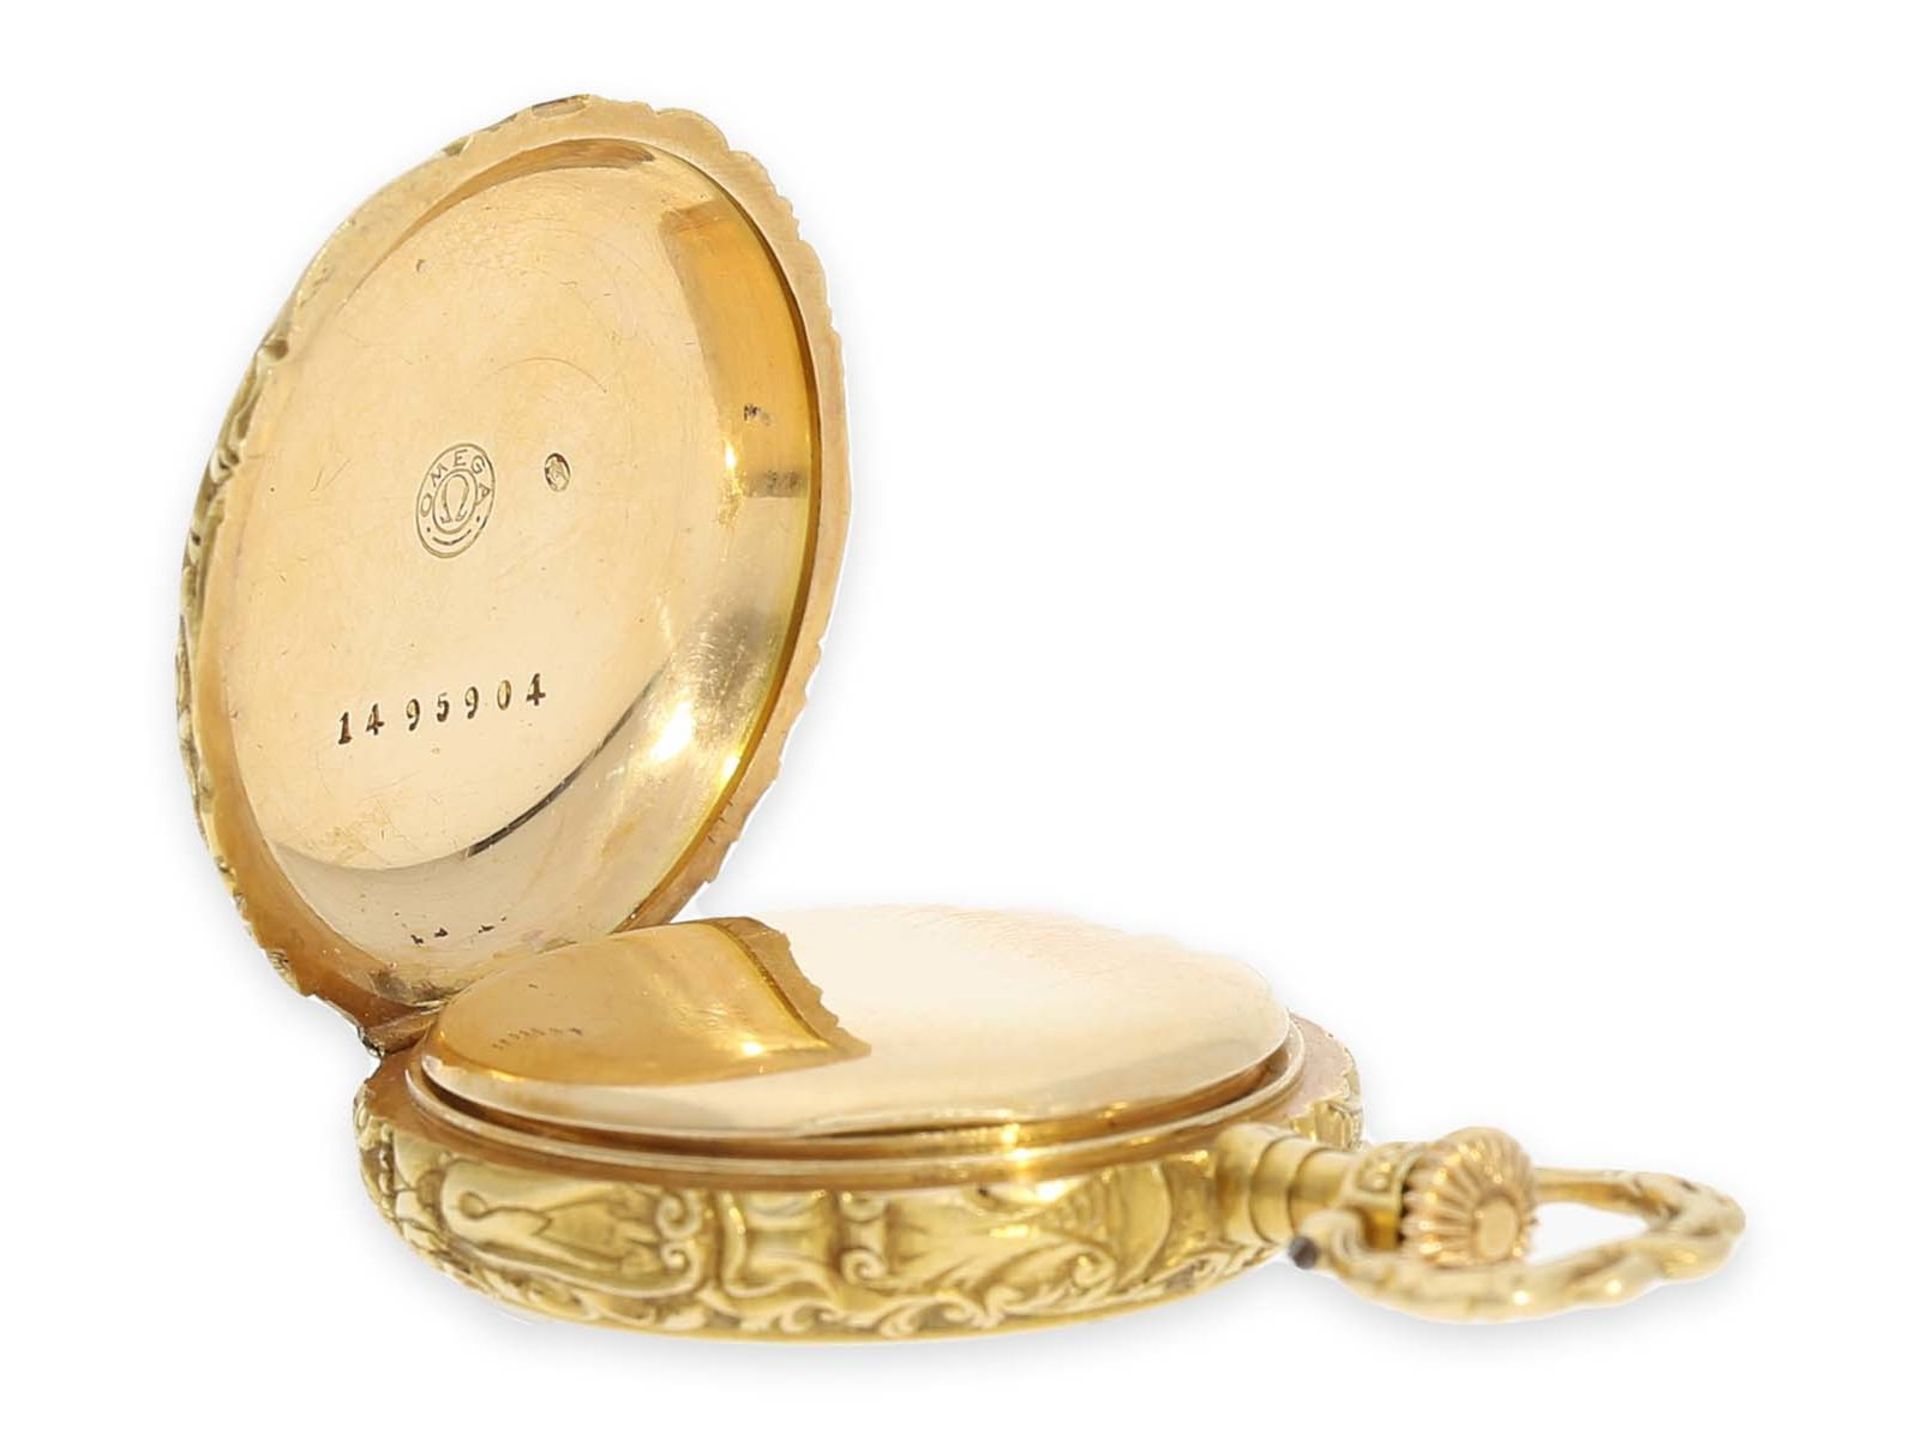 Taschenuhr: extrem rare Omega Damenuhr mit Renaissance-Gehäuse und Zifferblatt aus Guilloche- - Bild 5 aus 5